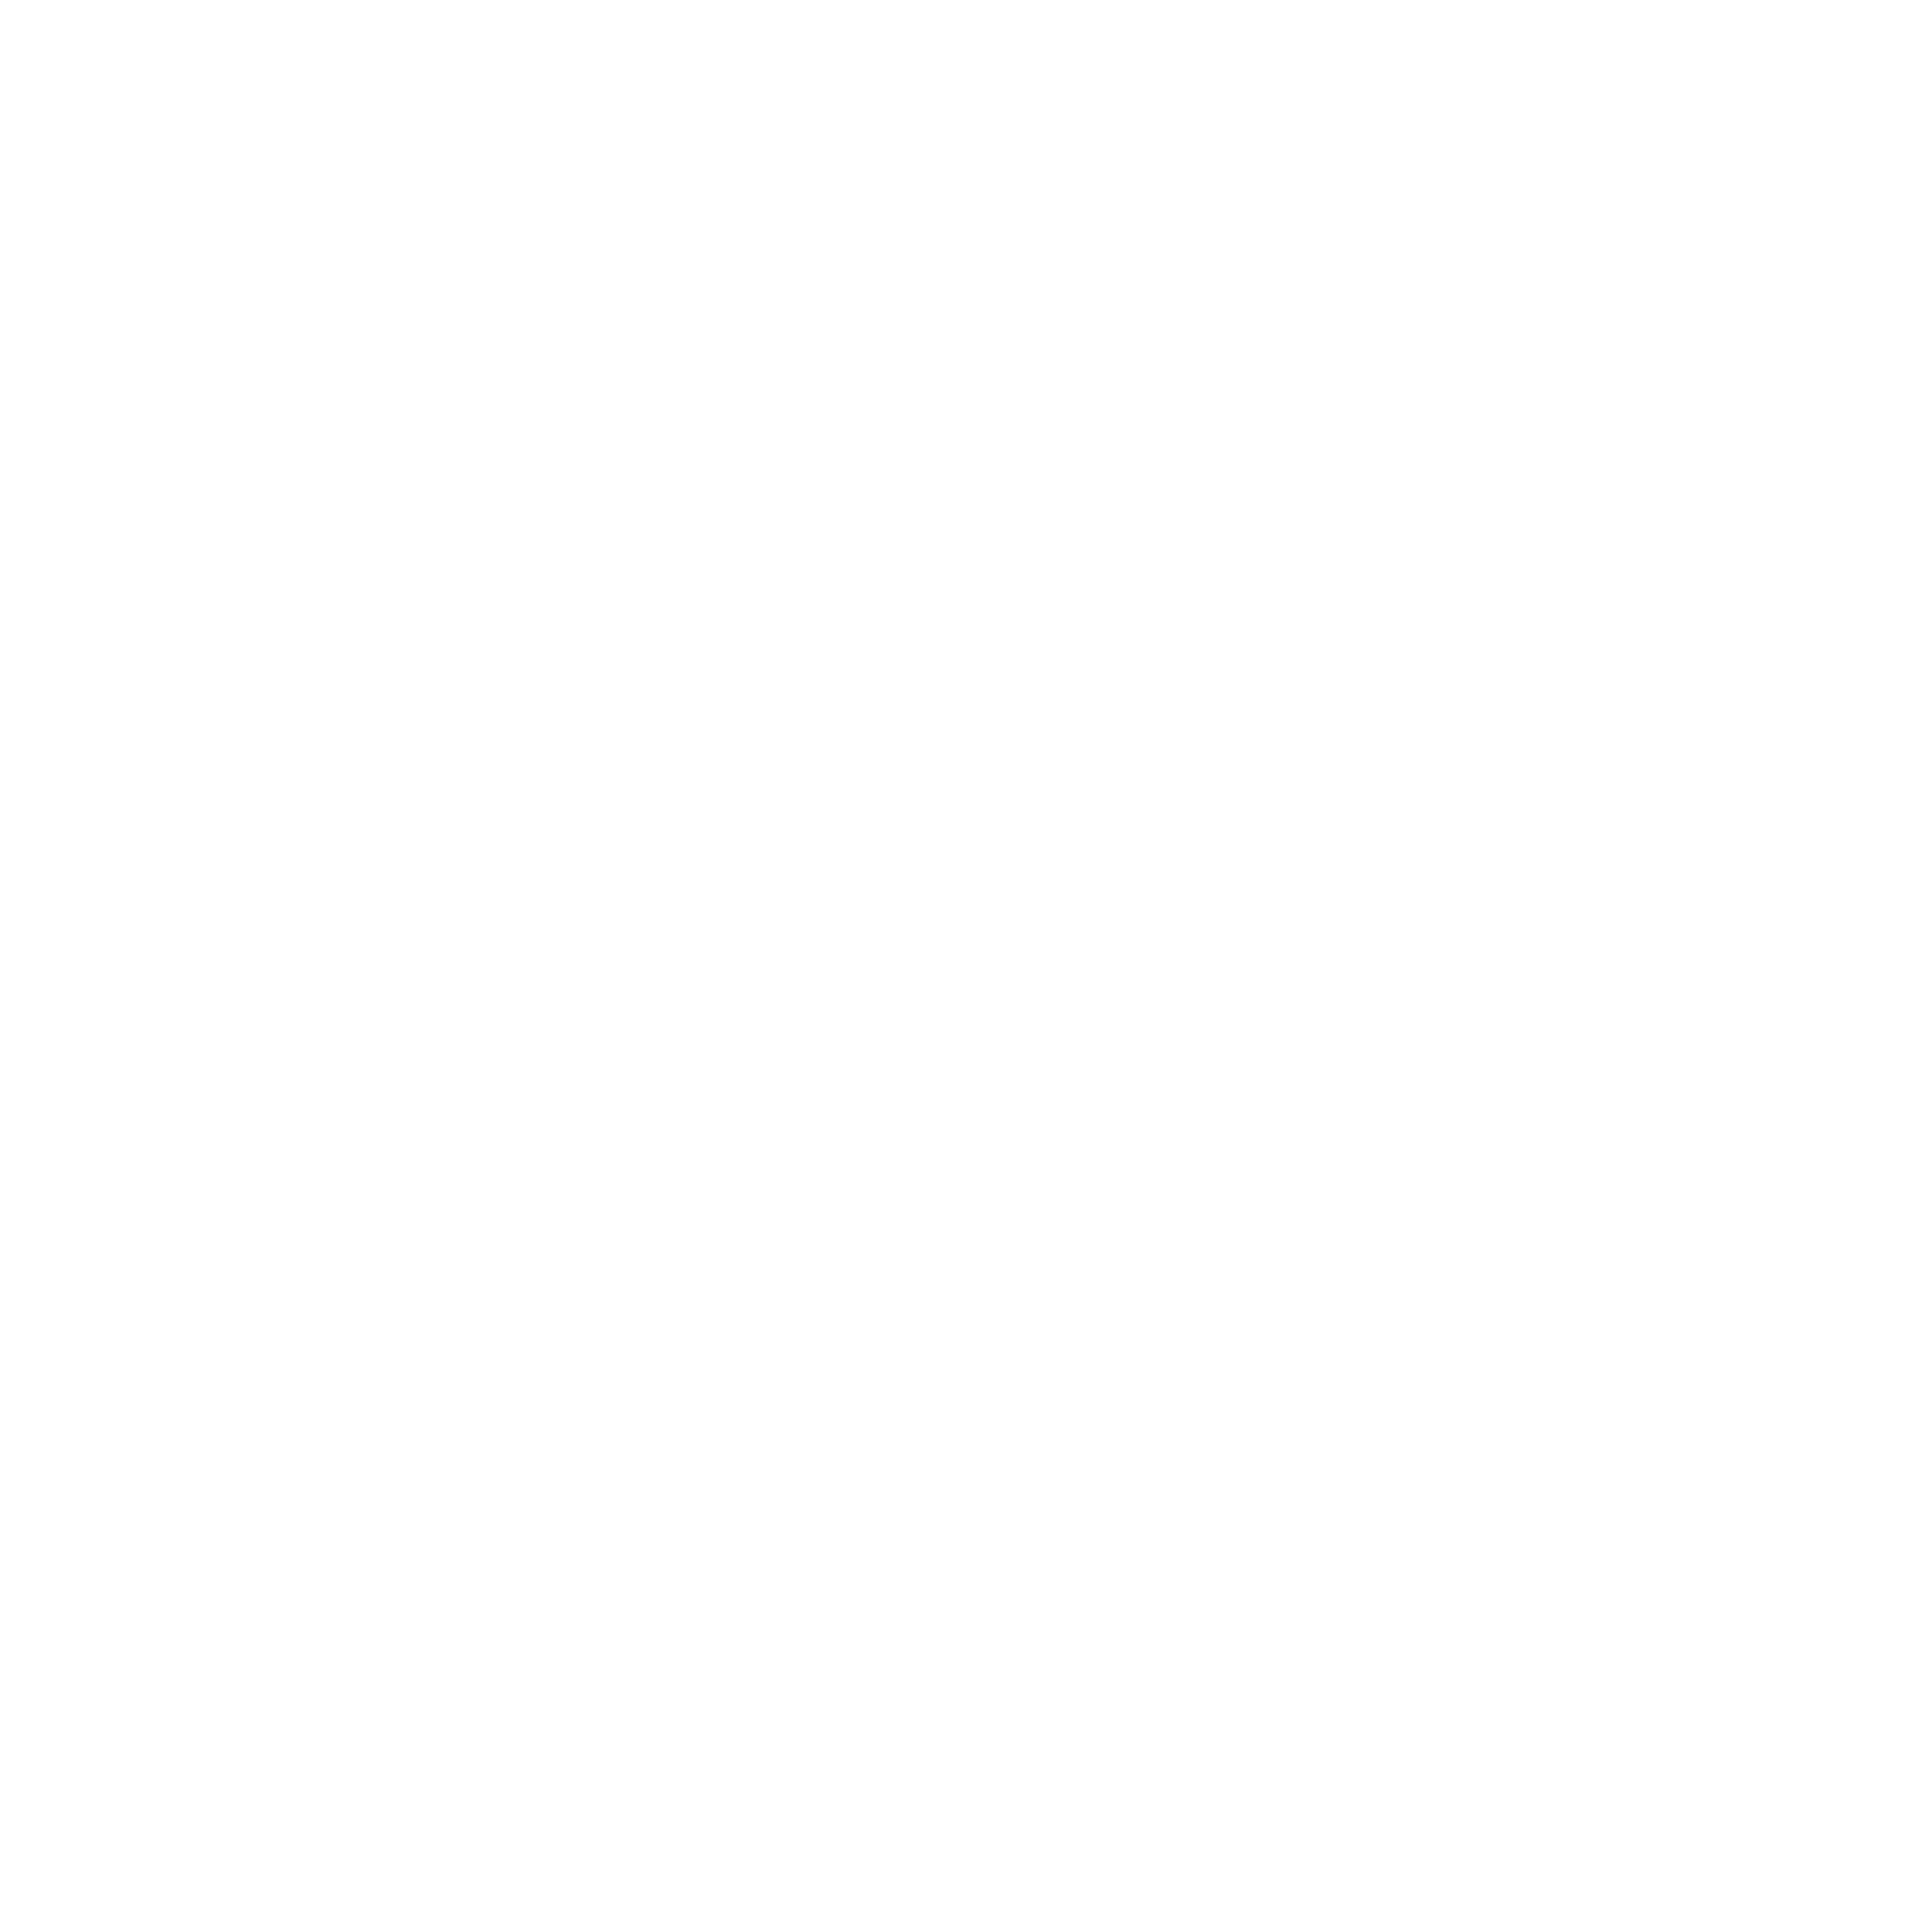 Lio ibiza logo